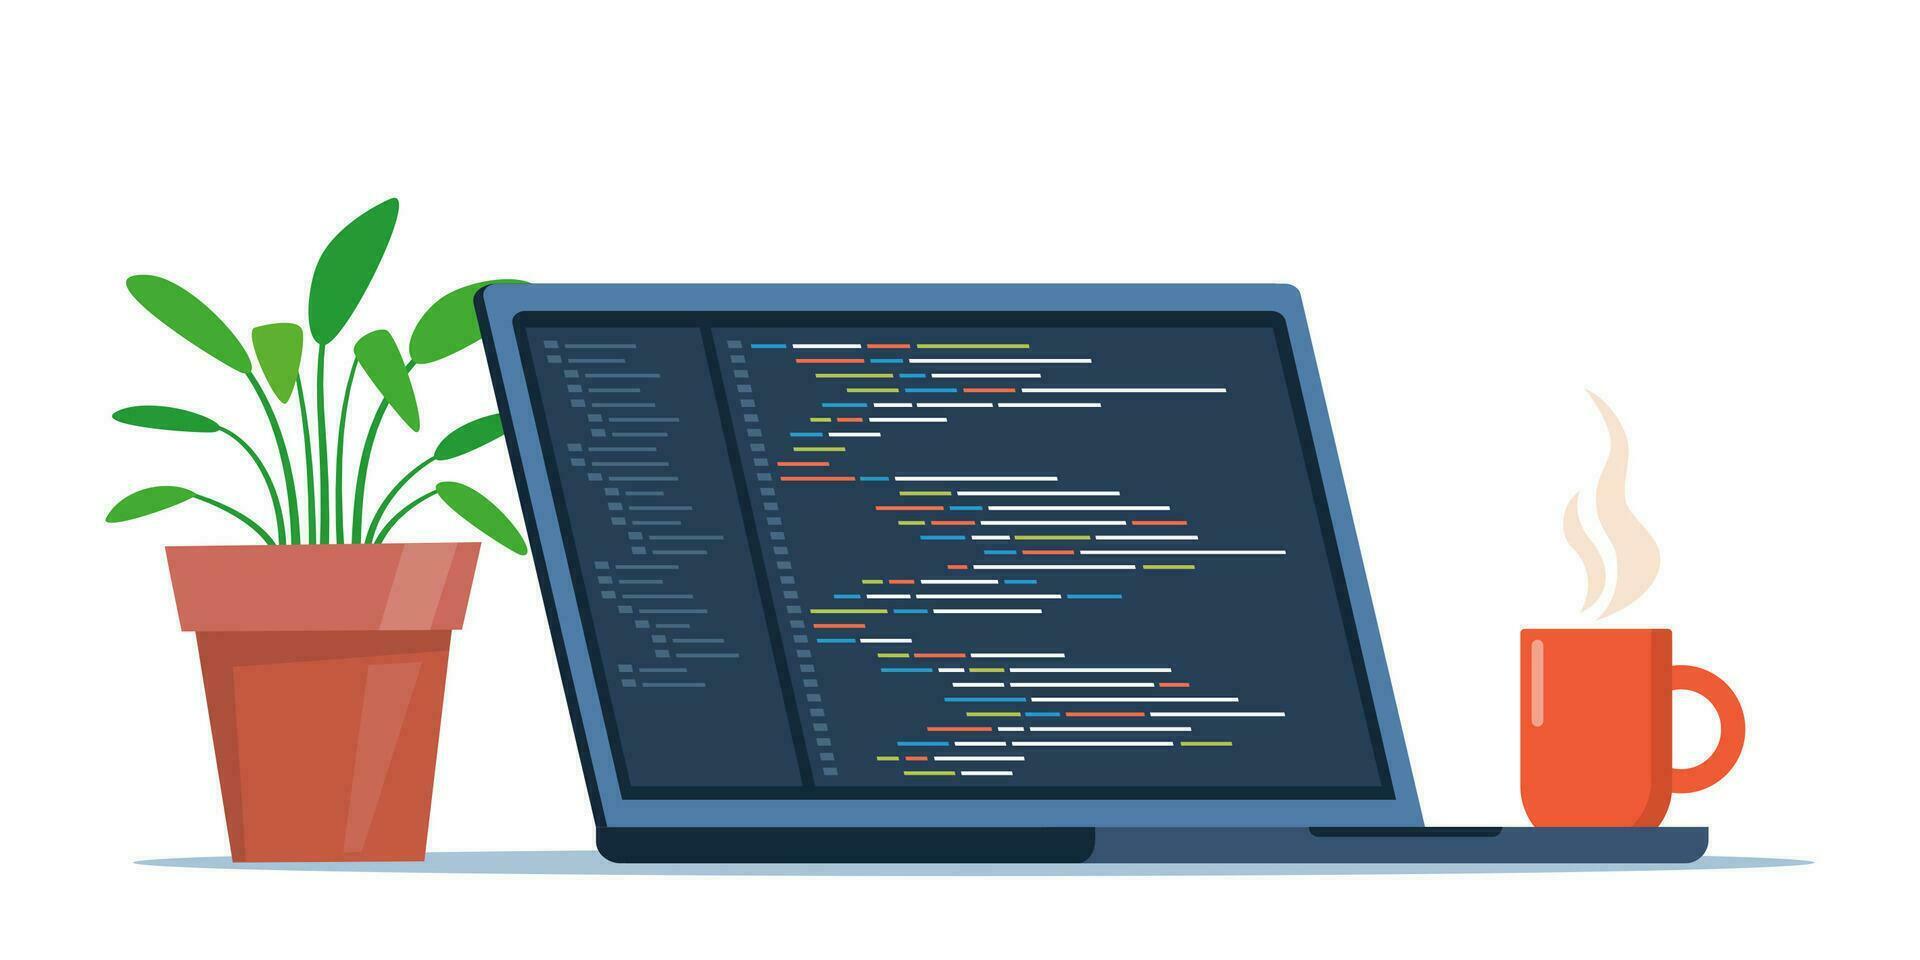 Laptop mit Tasse von Kaffee und Pflanze im Topf. Arbeitsplatz von Programmierer, online Programmierer. Codierung und Programmierung, Entwicklung Websites mit Besondere Sprache. Vektor Illustration.